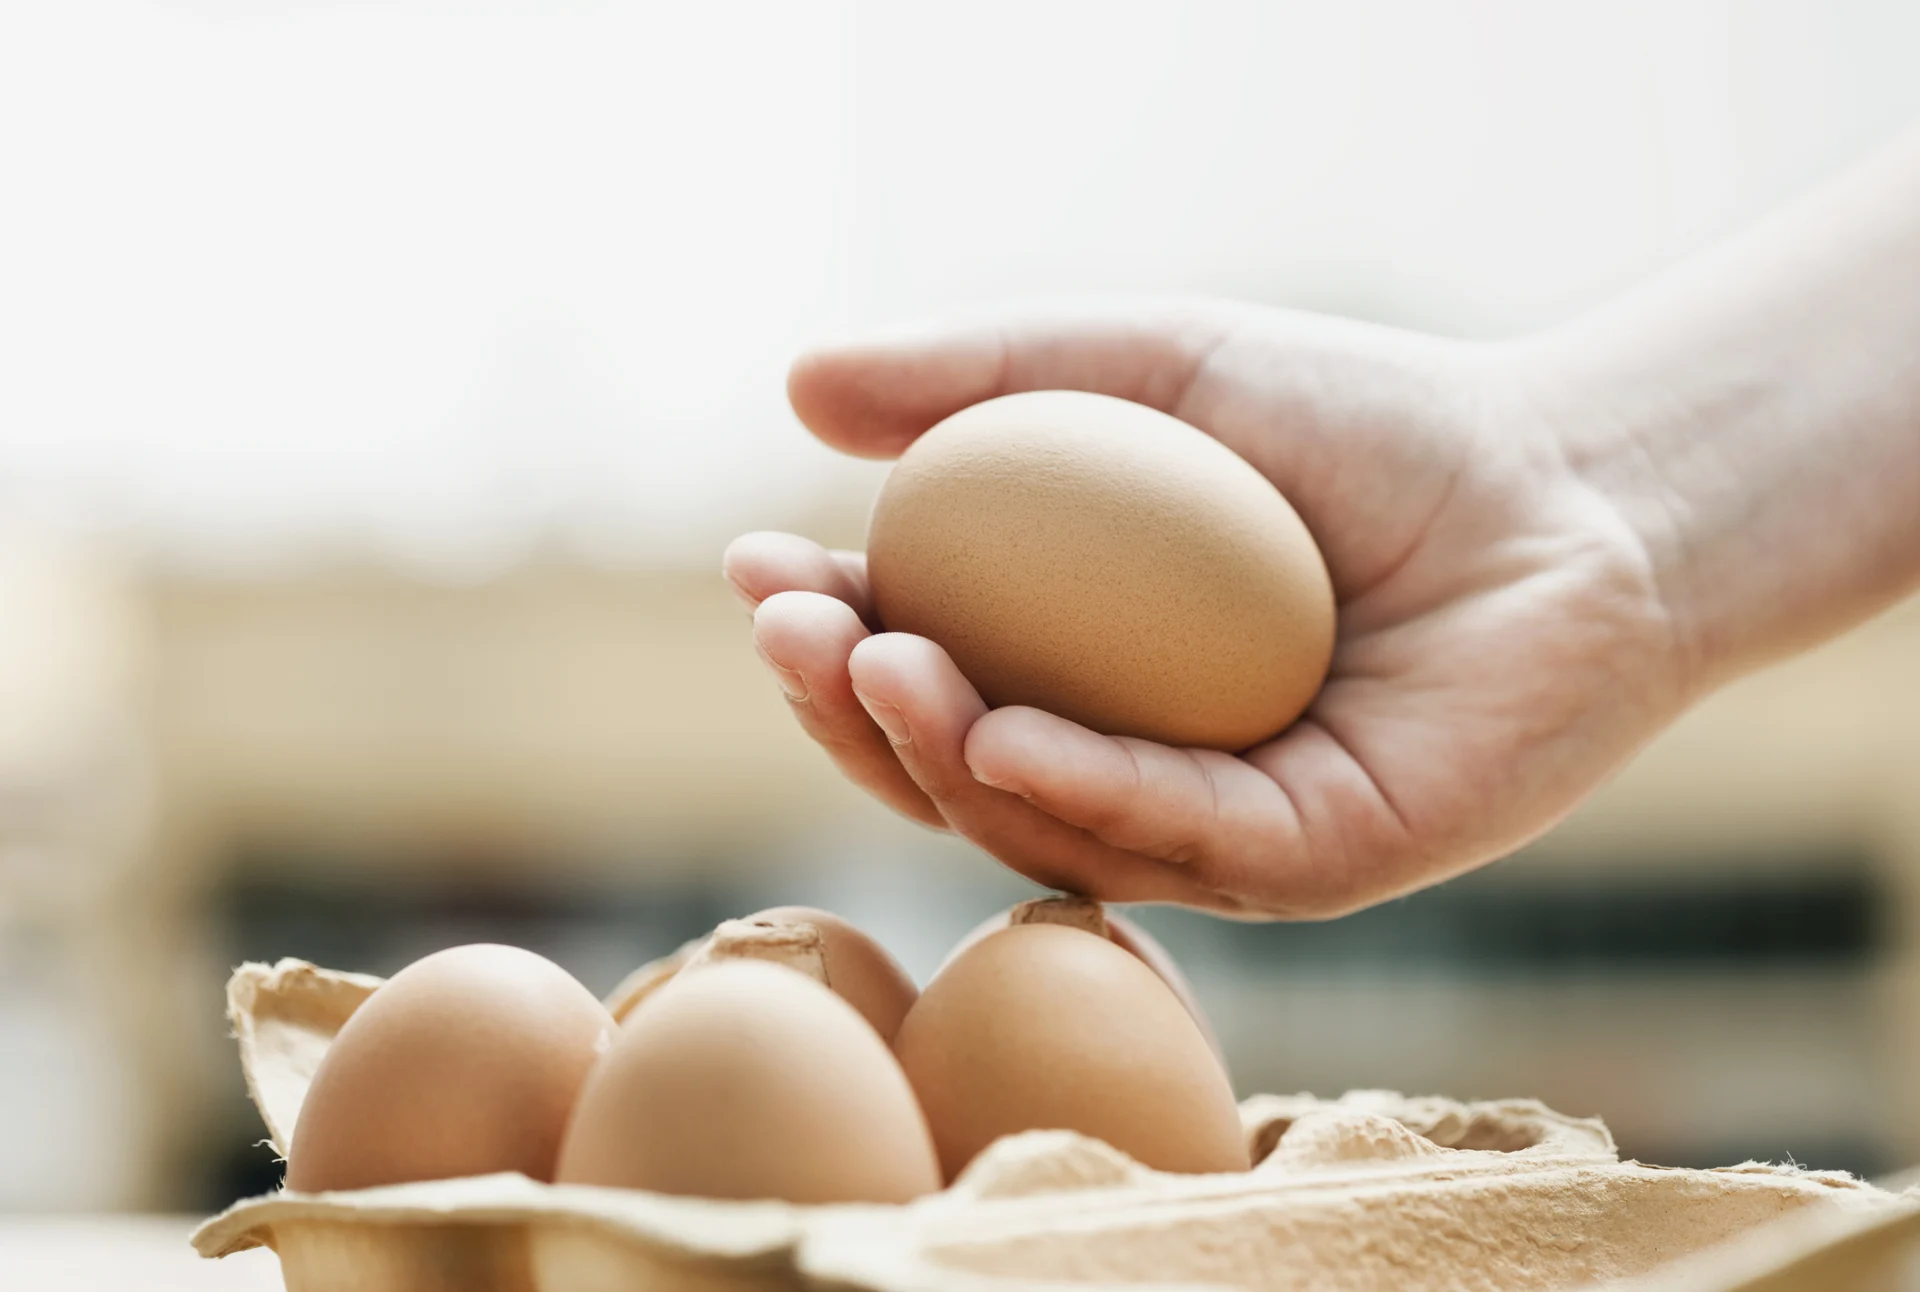 Un uovo marrone giace delicatamente in una mano sopra una scatola con altre uova.